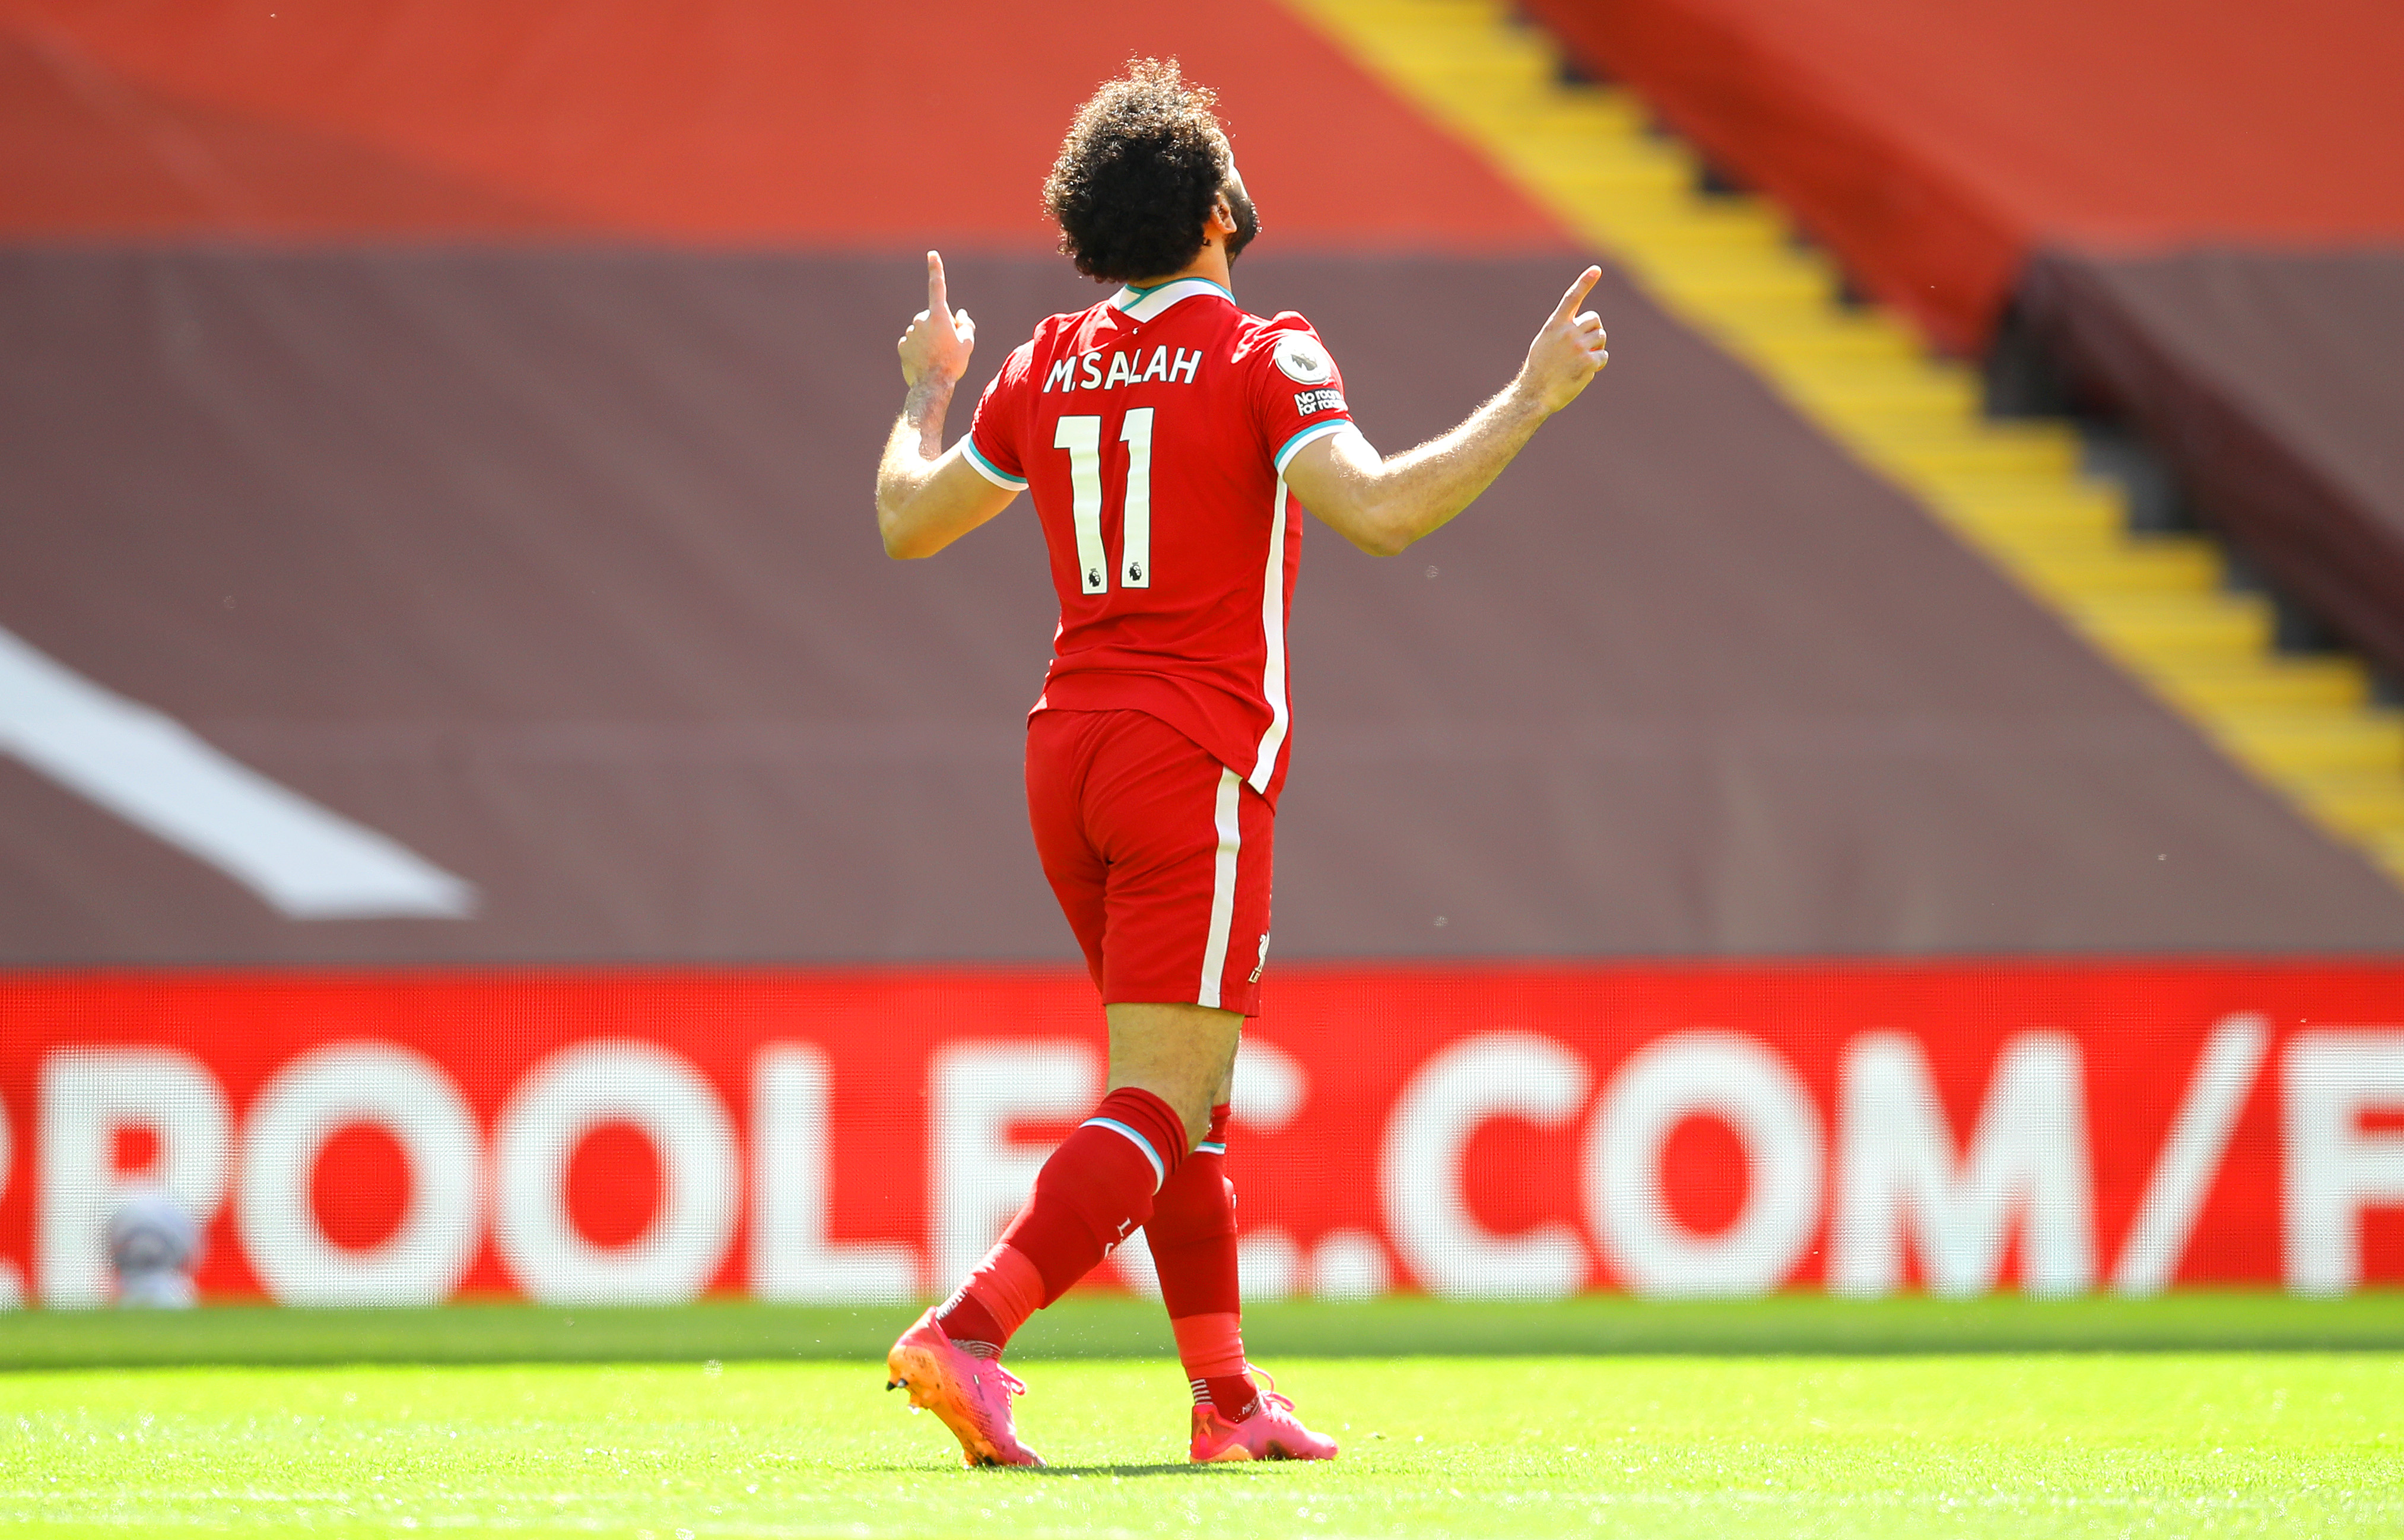 RUMEUR - Liverpool a déjà trouvé le remplaçant de Salah